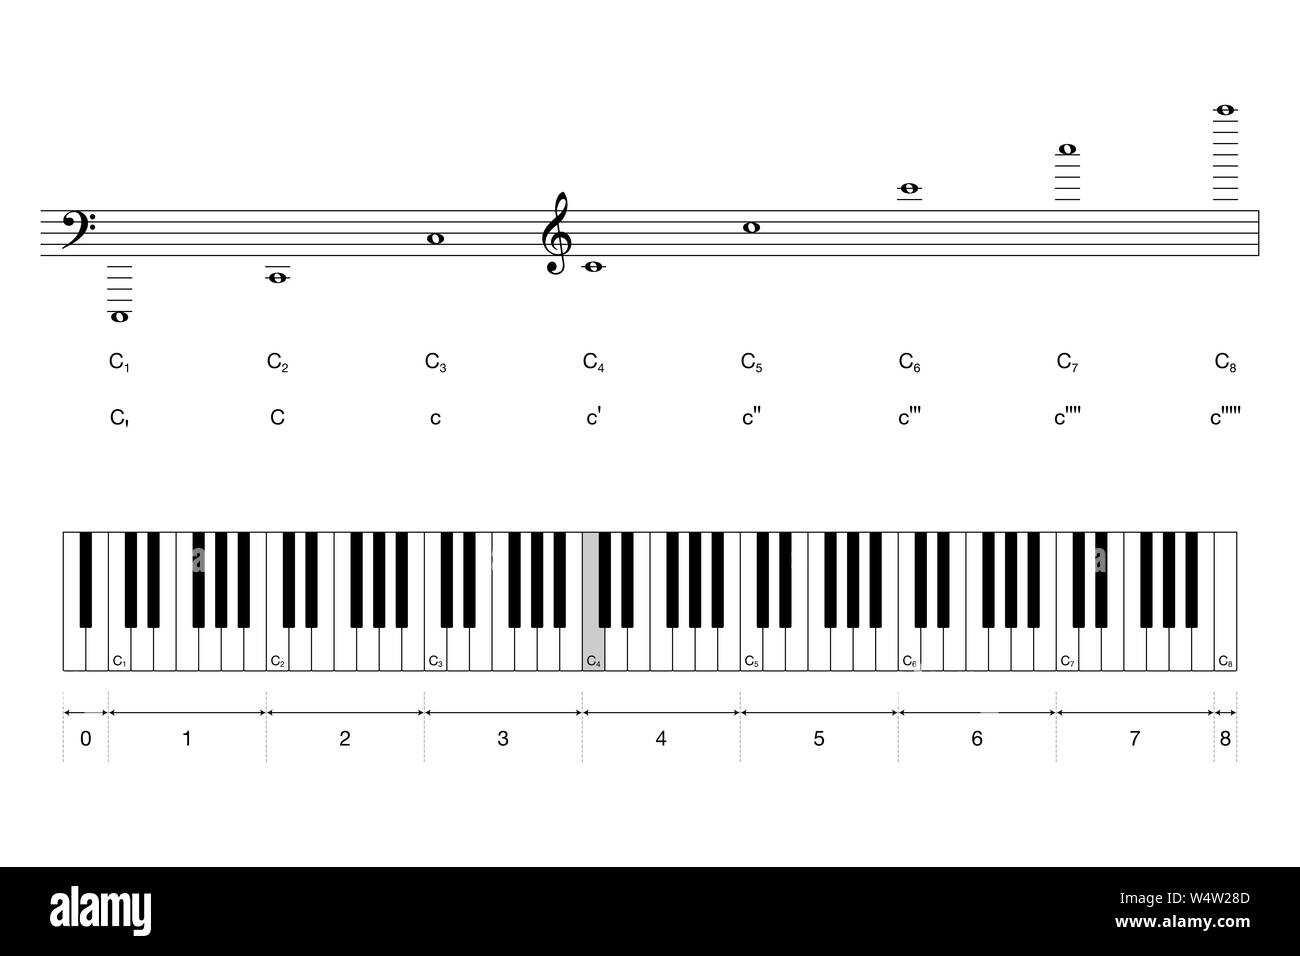 Ottave di un grande pianoforte tastiera con scientifica e passo di Helmholtz notazione. Centro C è colorata in grigio. 88 tasti e sette ottave. Foto Stock